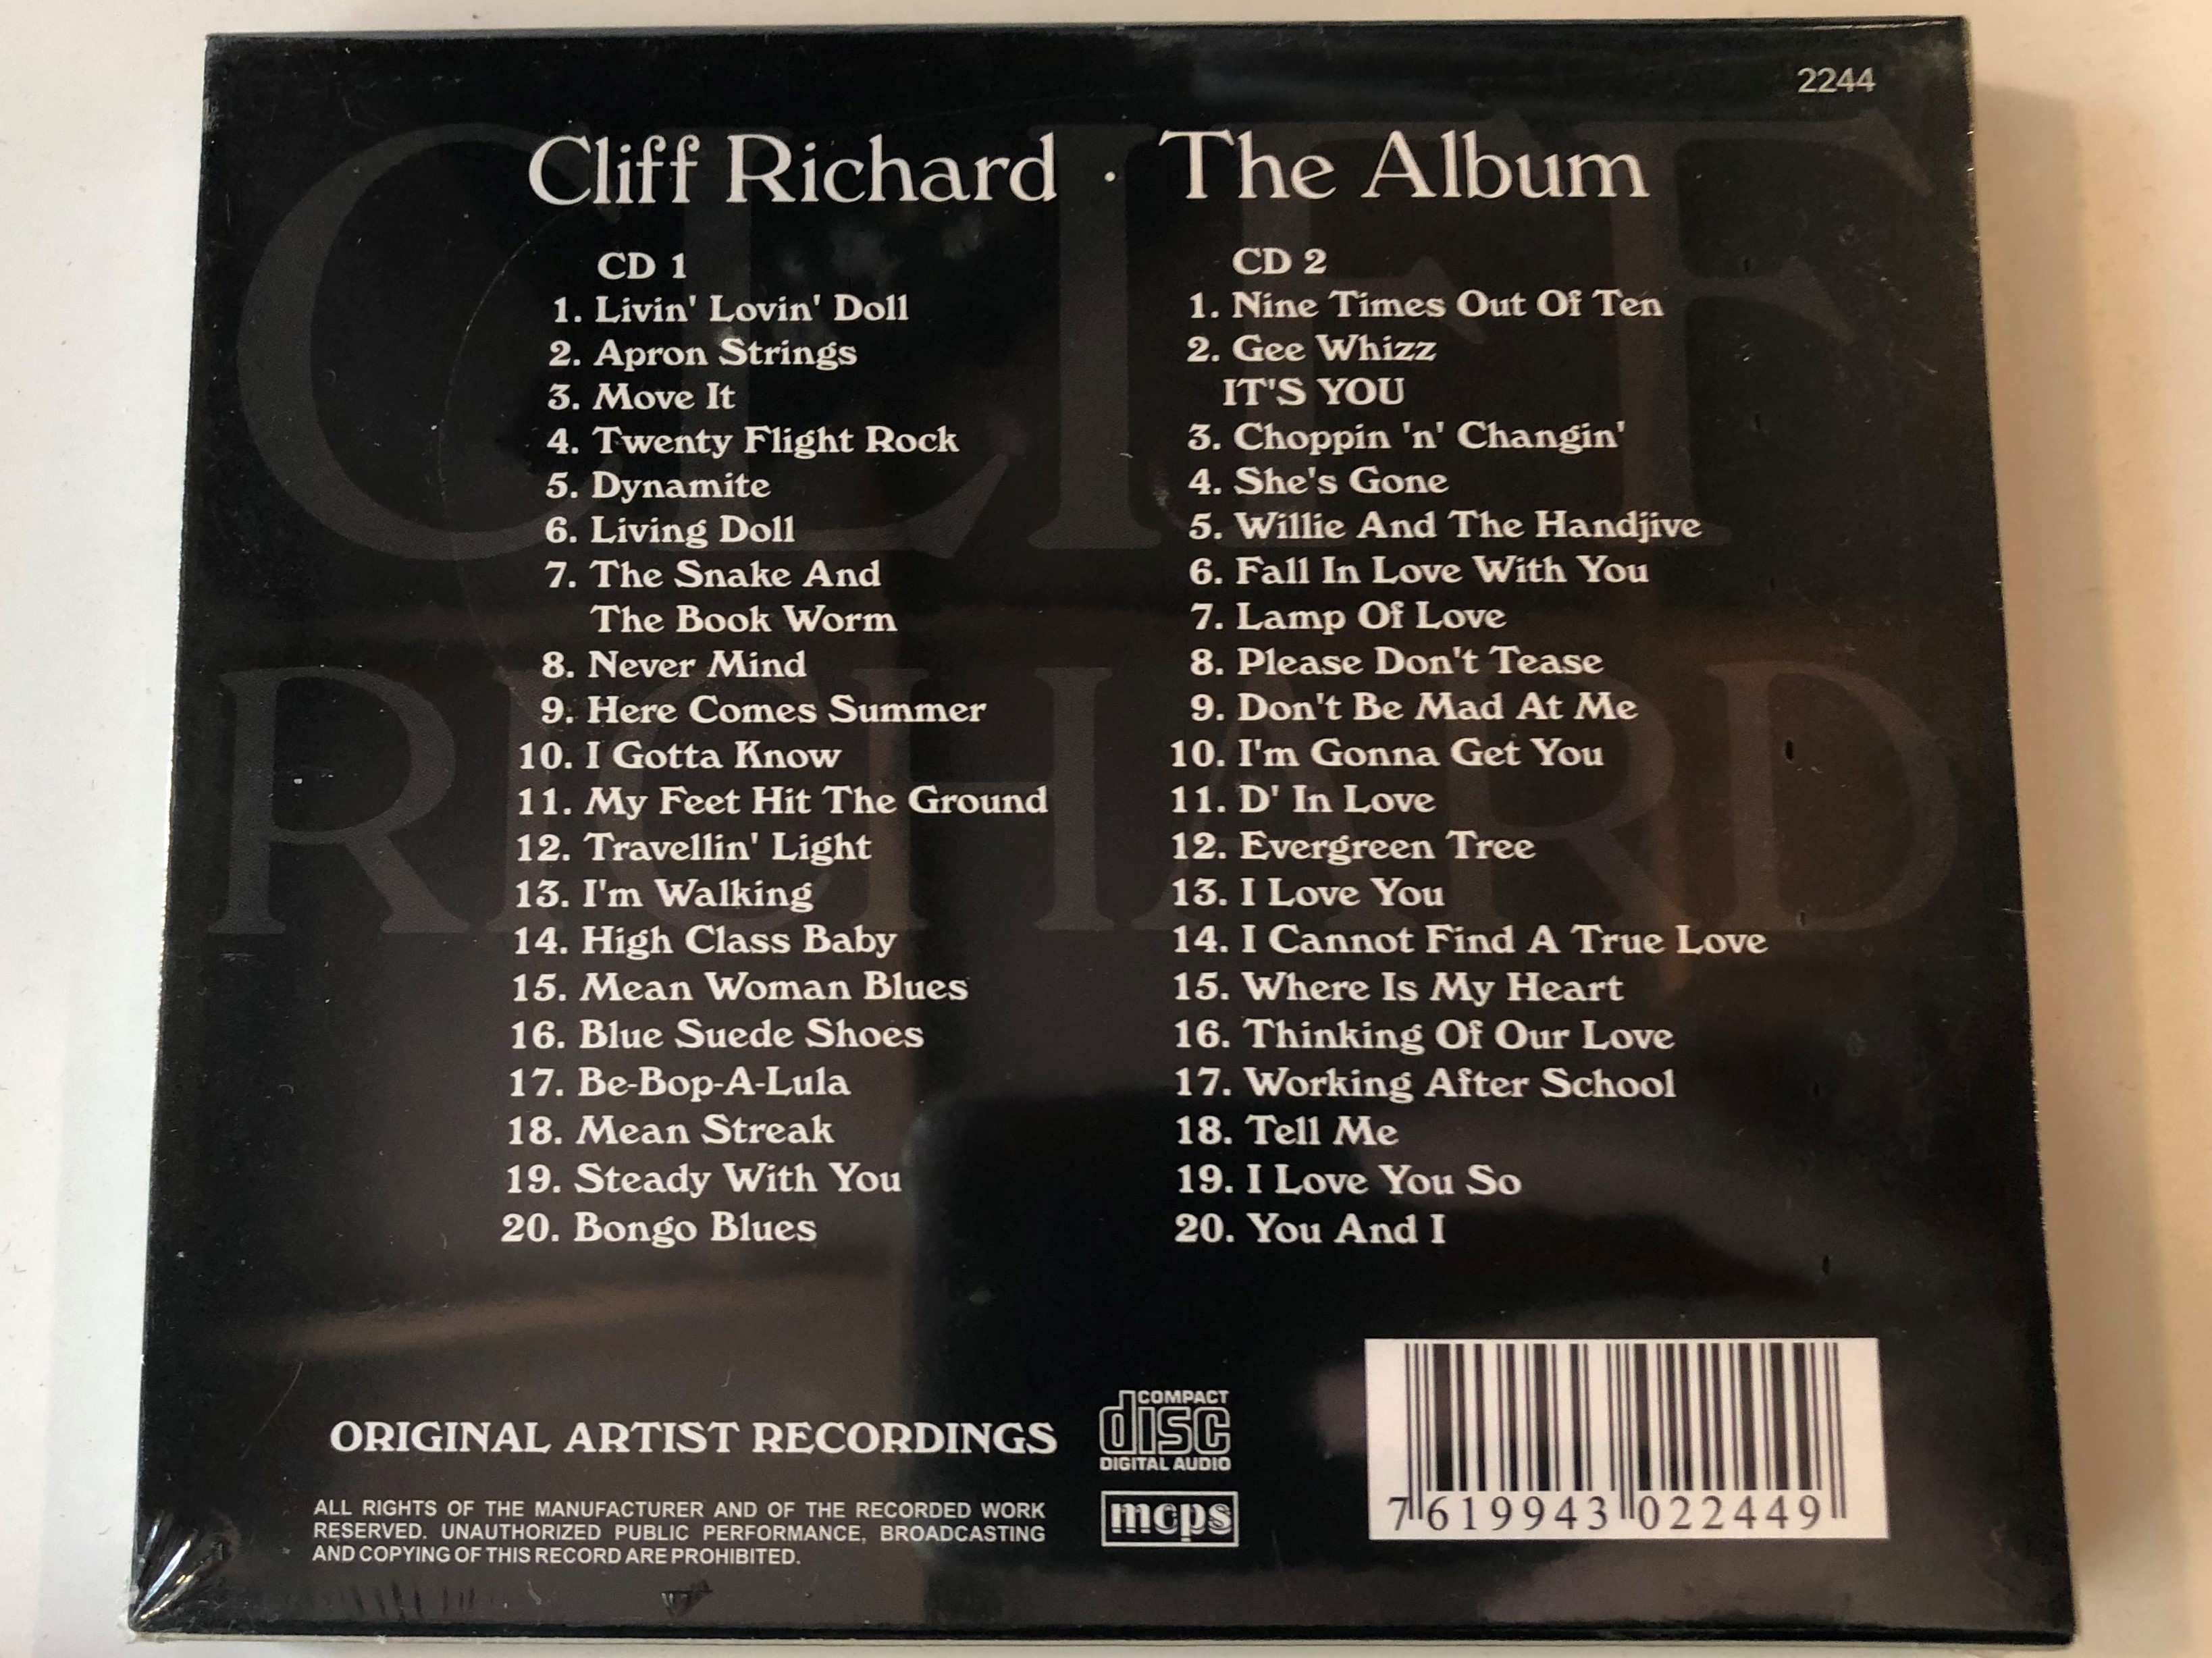 cliff-richard-the-album-original-artist-recording-2x-audio-cd-2244-2-.jpg